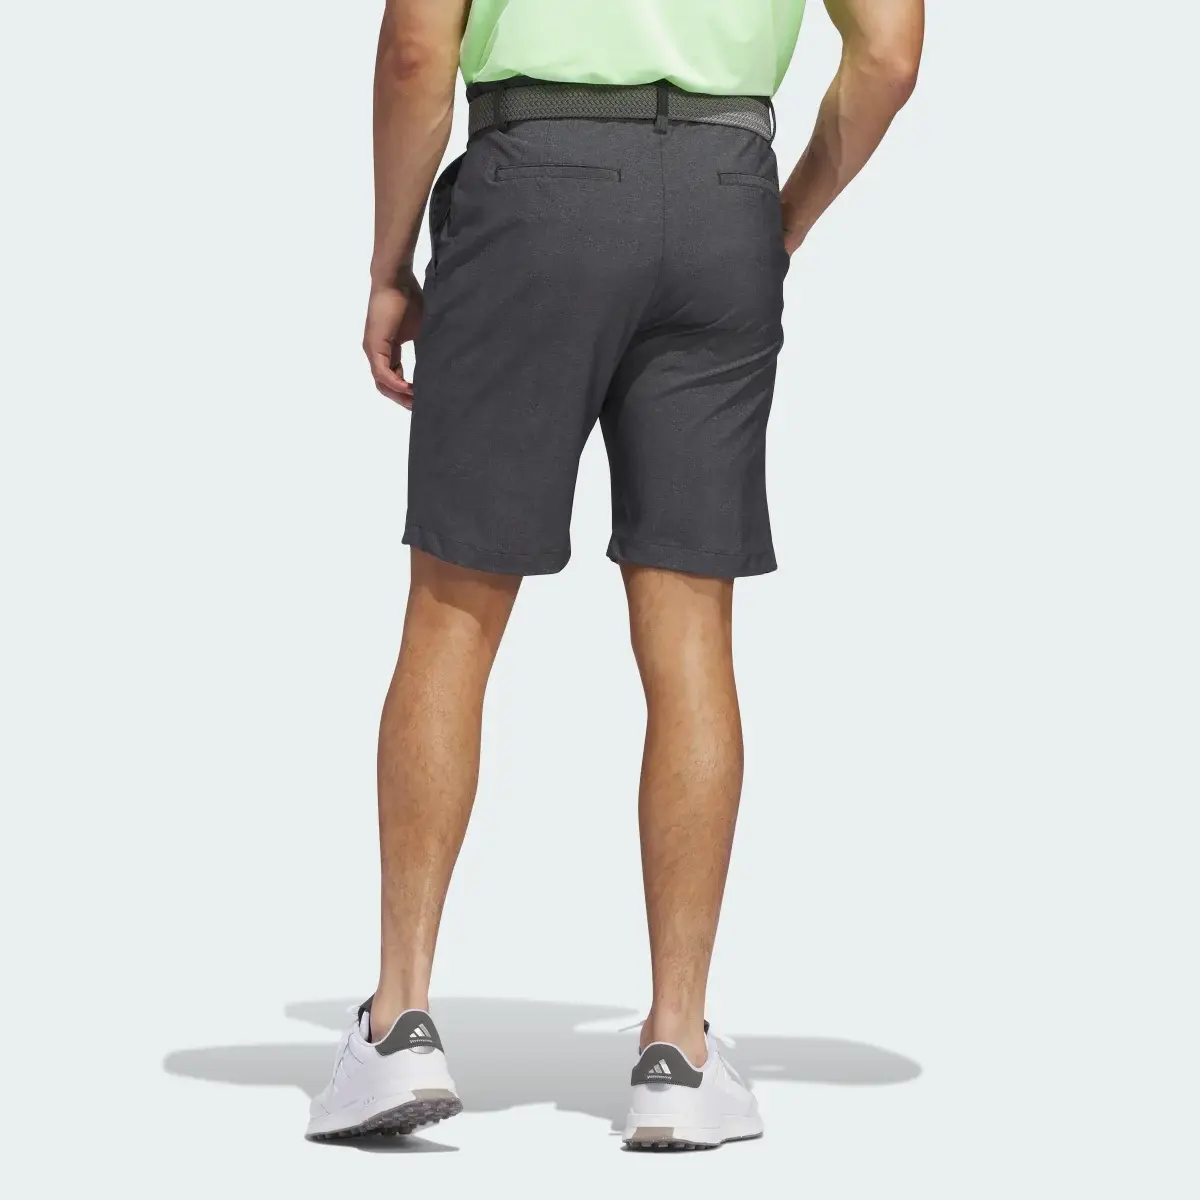 Adidas Ultimate365 Printed Shorts. 2